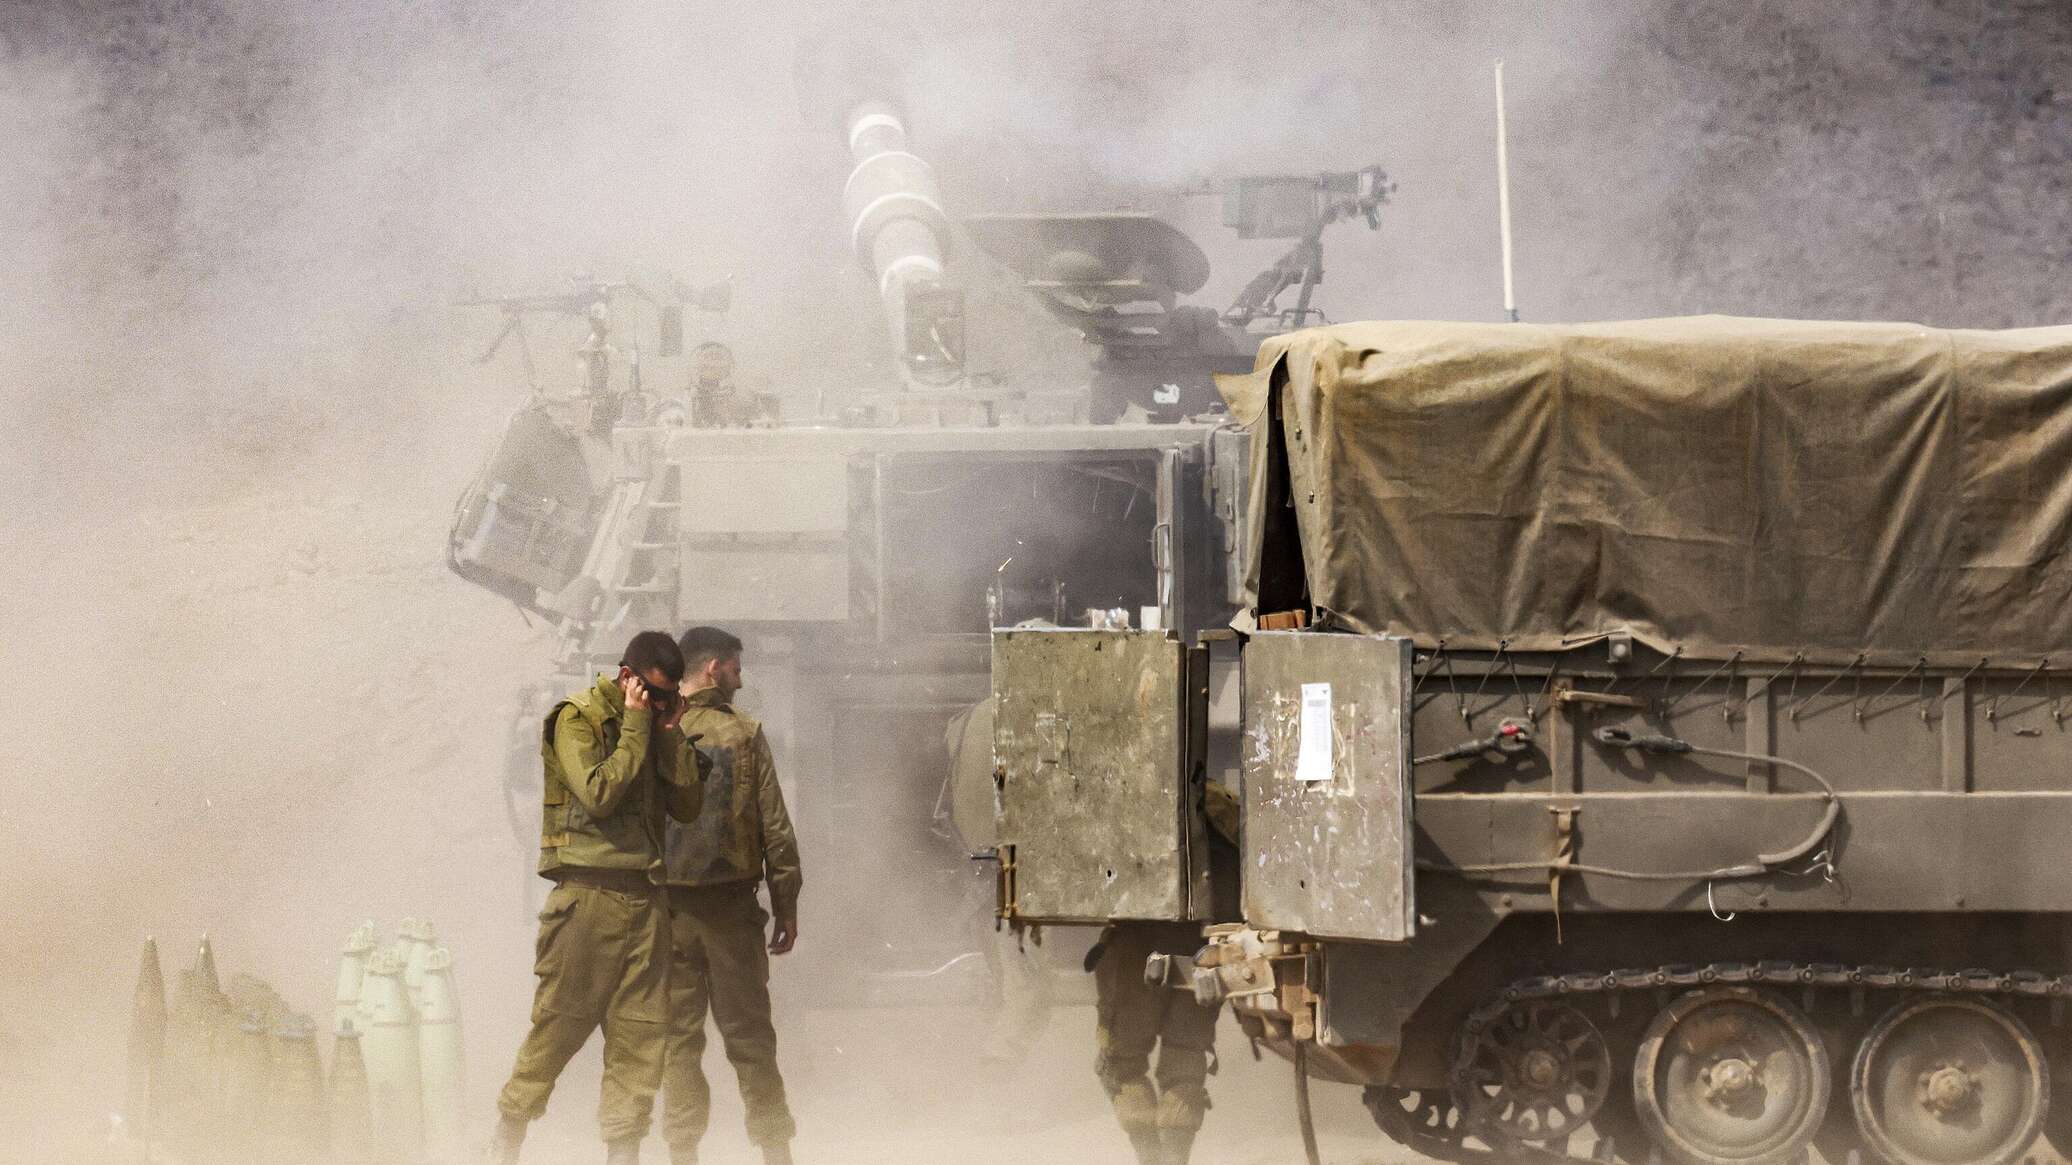 إسرائيل تفتح تحقيقا في أسباب تدمير ناقلة جنود "النمر" ومقتل 11 جنديا